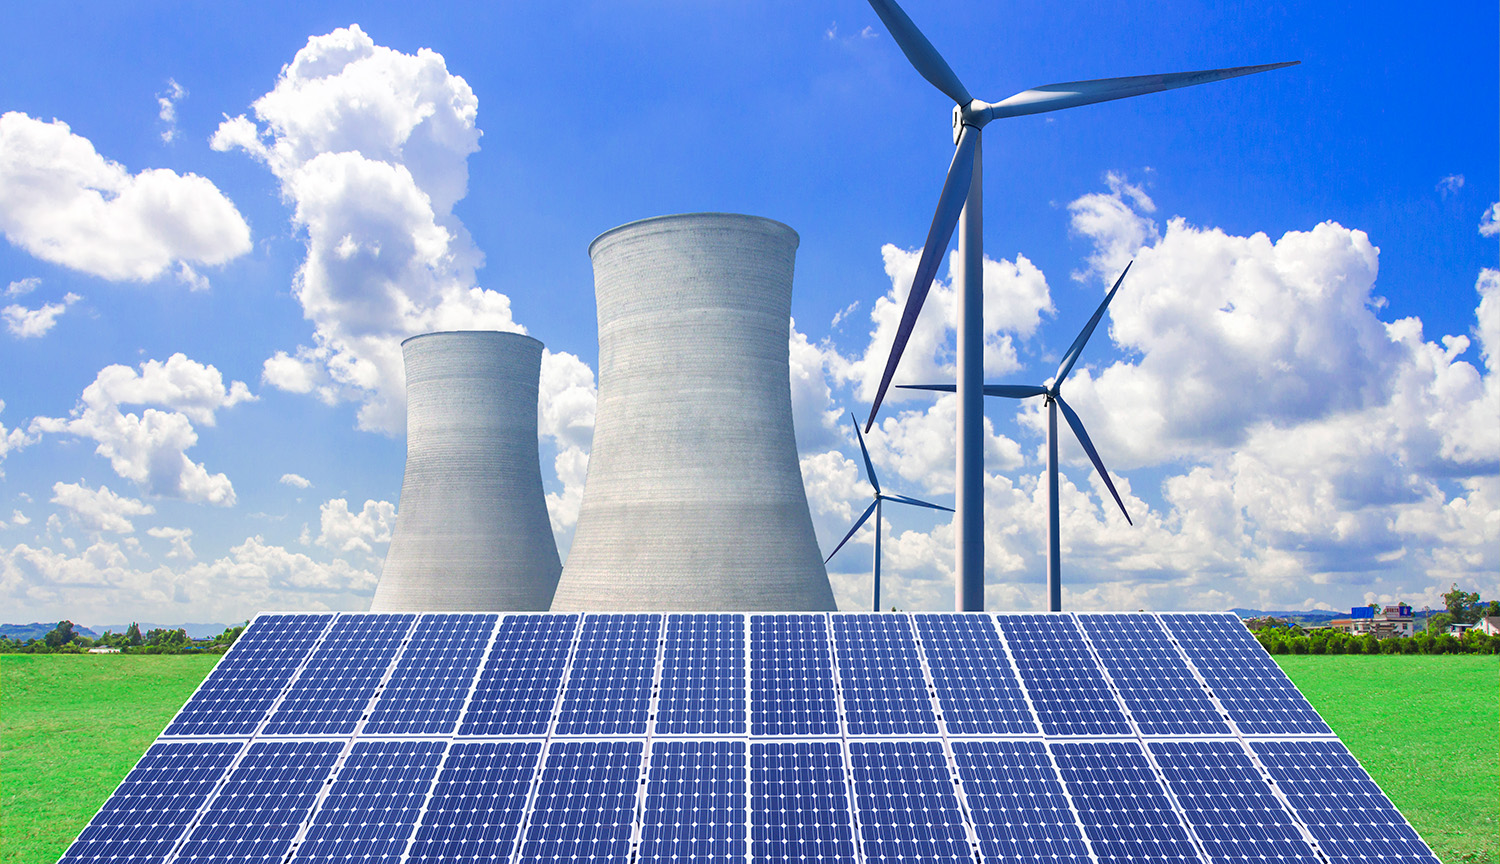 Las torres de refrigeración de una central nuclear, junto a molinos eólicos, se elevan sobre una serie de paneles solares.